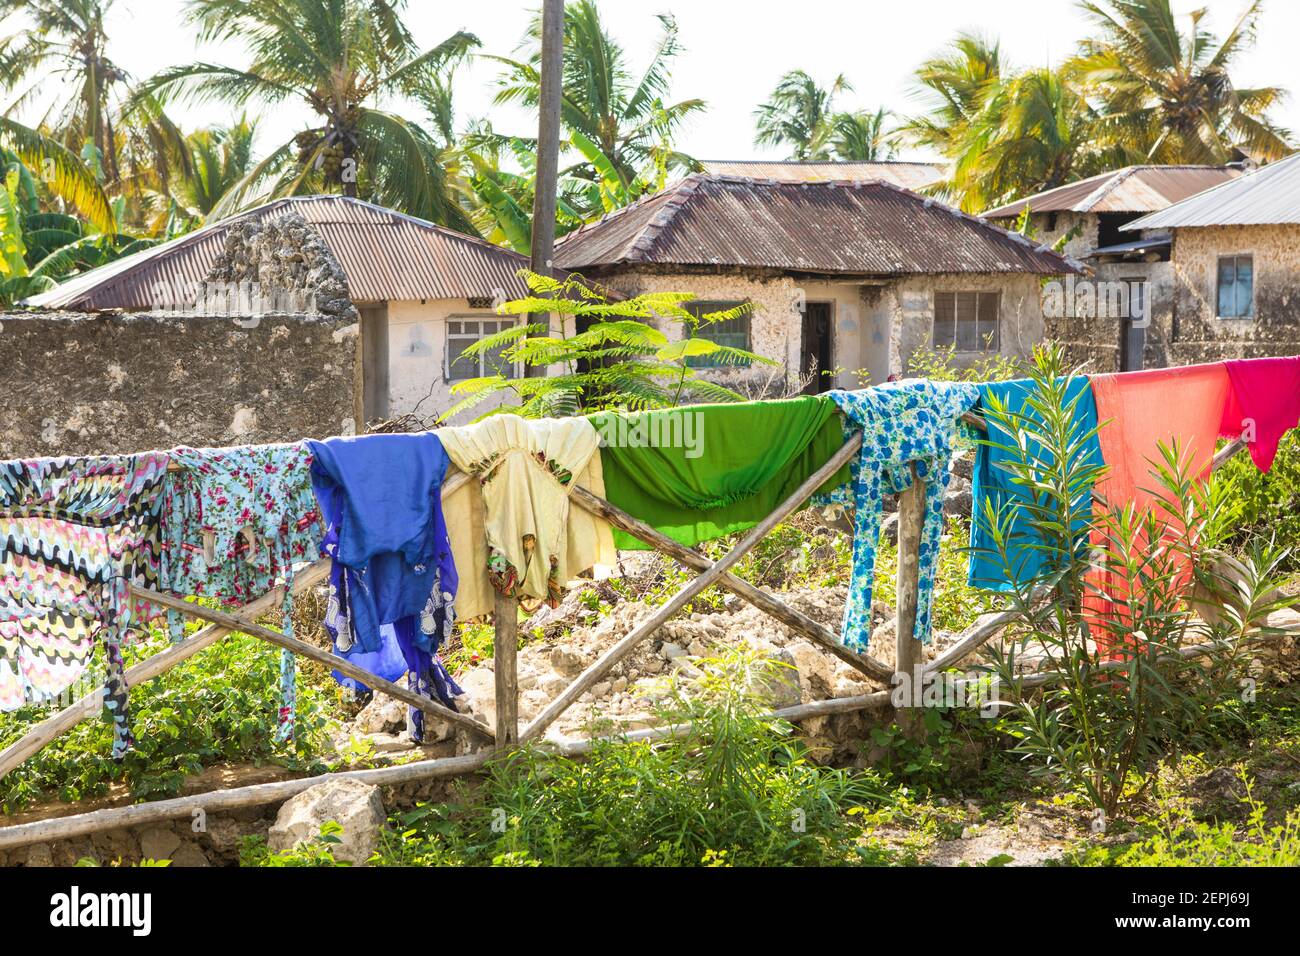 Un lave-linge coloré dans la rue du village africain. Vêtements mouillés vêtements suspendus sur une clôture en bois, climat tropical. Zanzibar, Tanzanie Banque D'Images